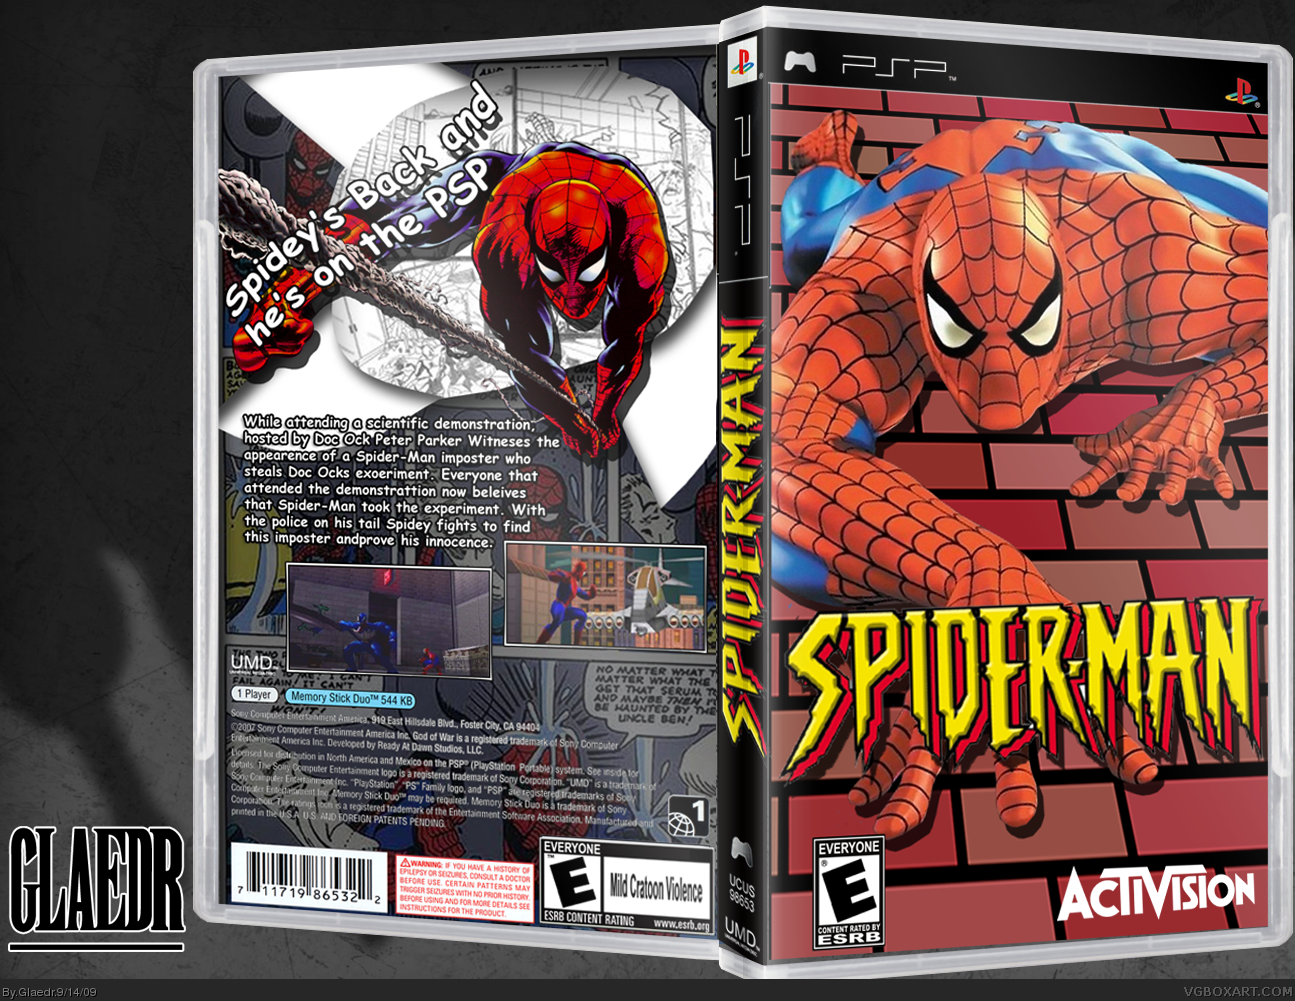 Spiderman box cover. 